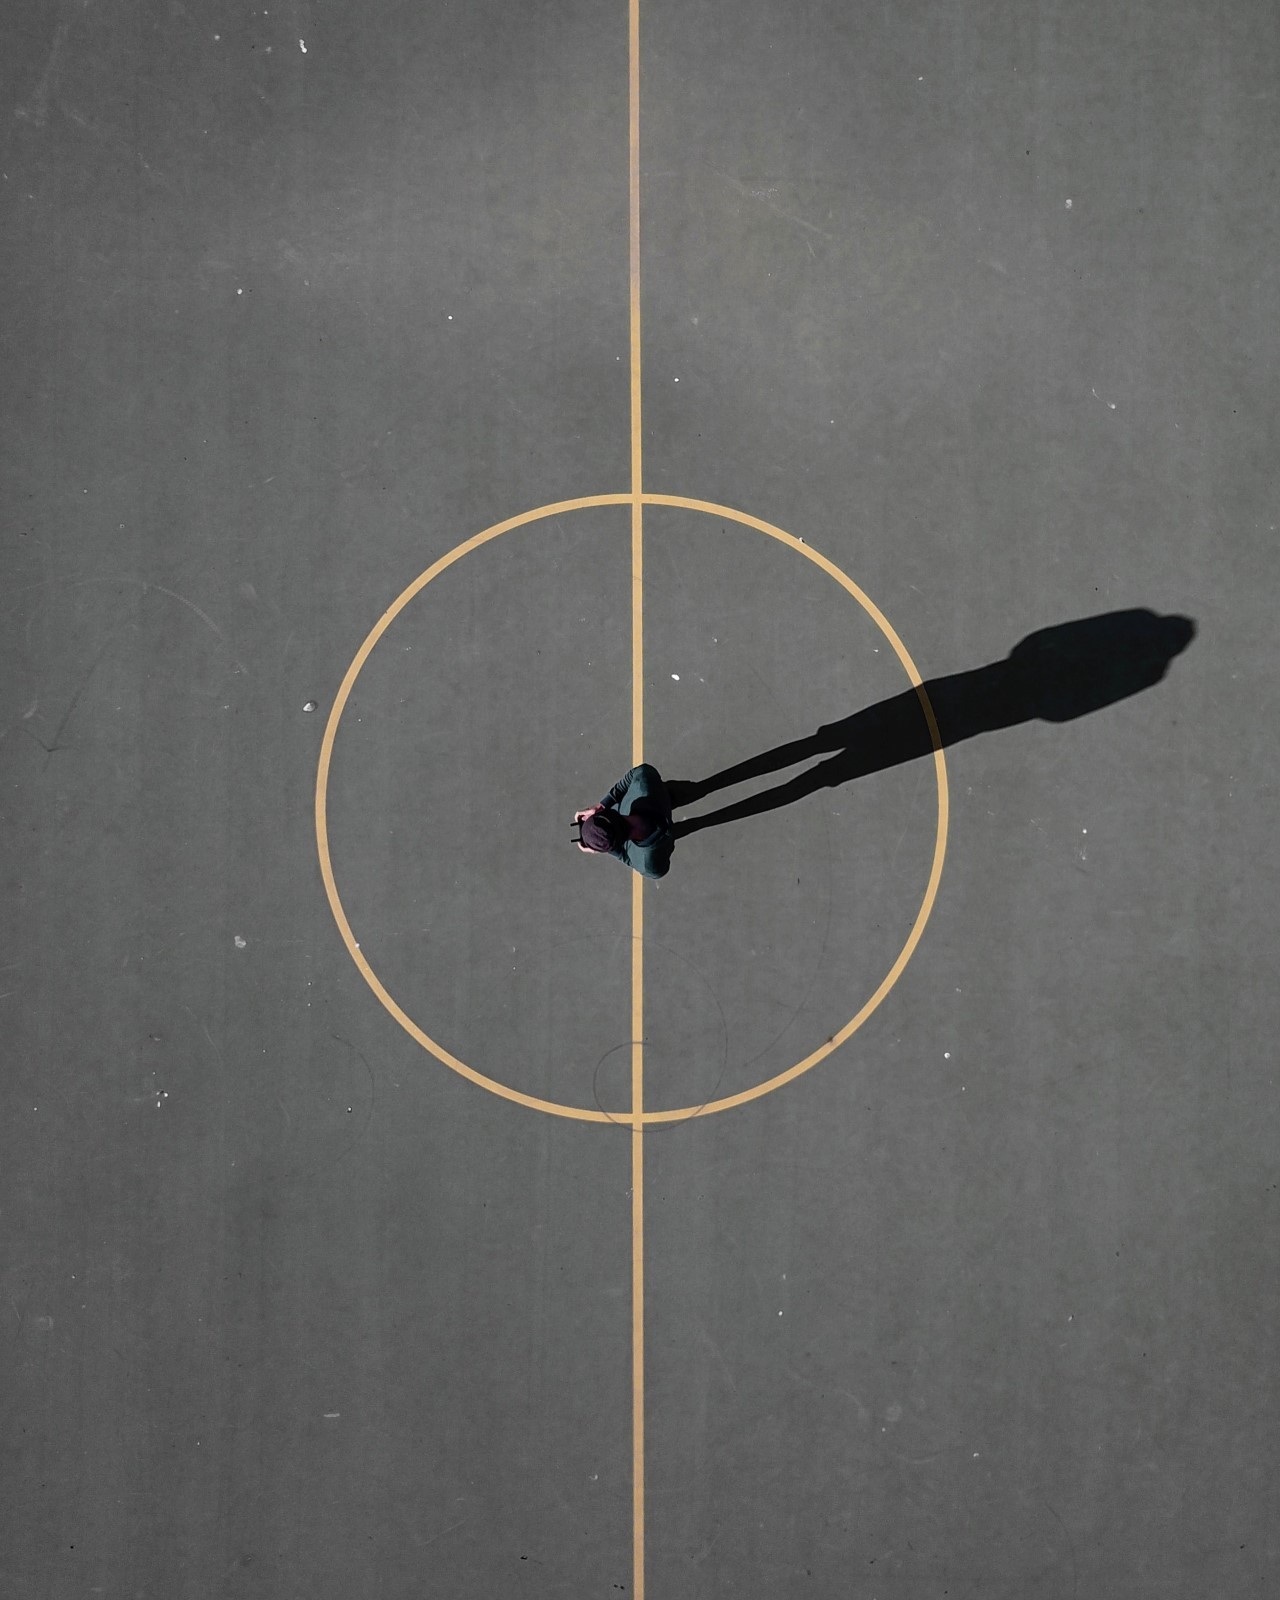 Σκιά μιας αντρικής φιγούρας στην μέση ενός γηπέδου μπάσκετ